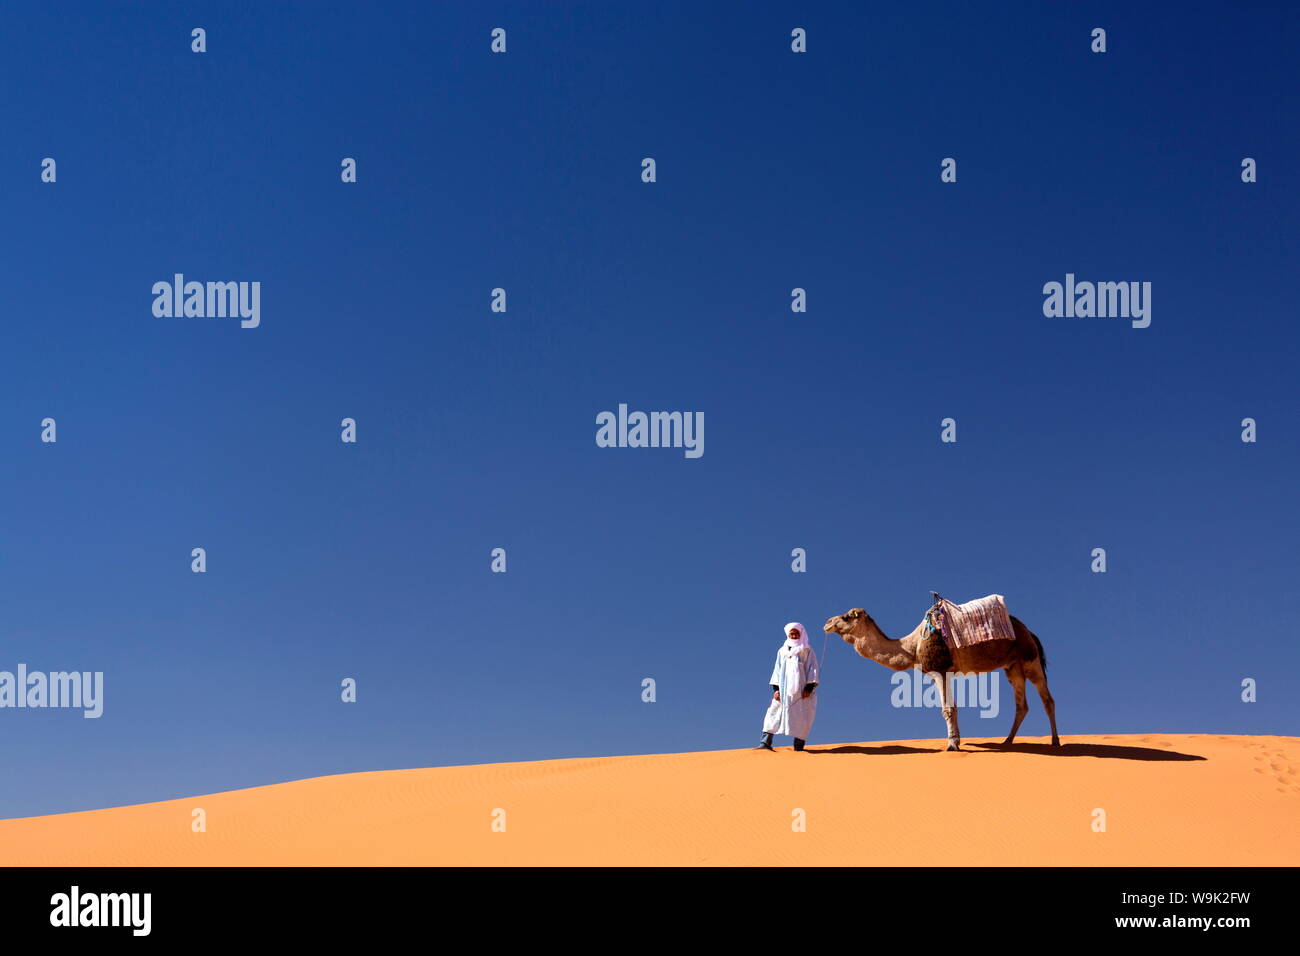 Homme berbère avec Camel sur la crête d'une dune de sable orange dans l'Erg Chebbi, la mer de sable du désert du Sahara, près de Merzouga, Maroc, Afrique du Nord, Afrique Banque D'Images